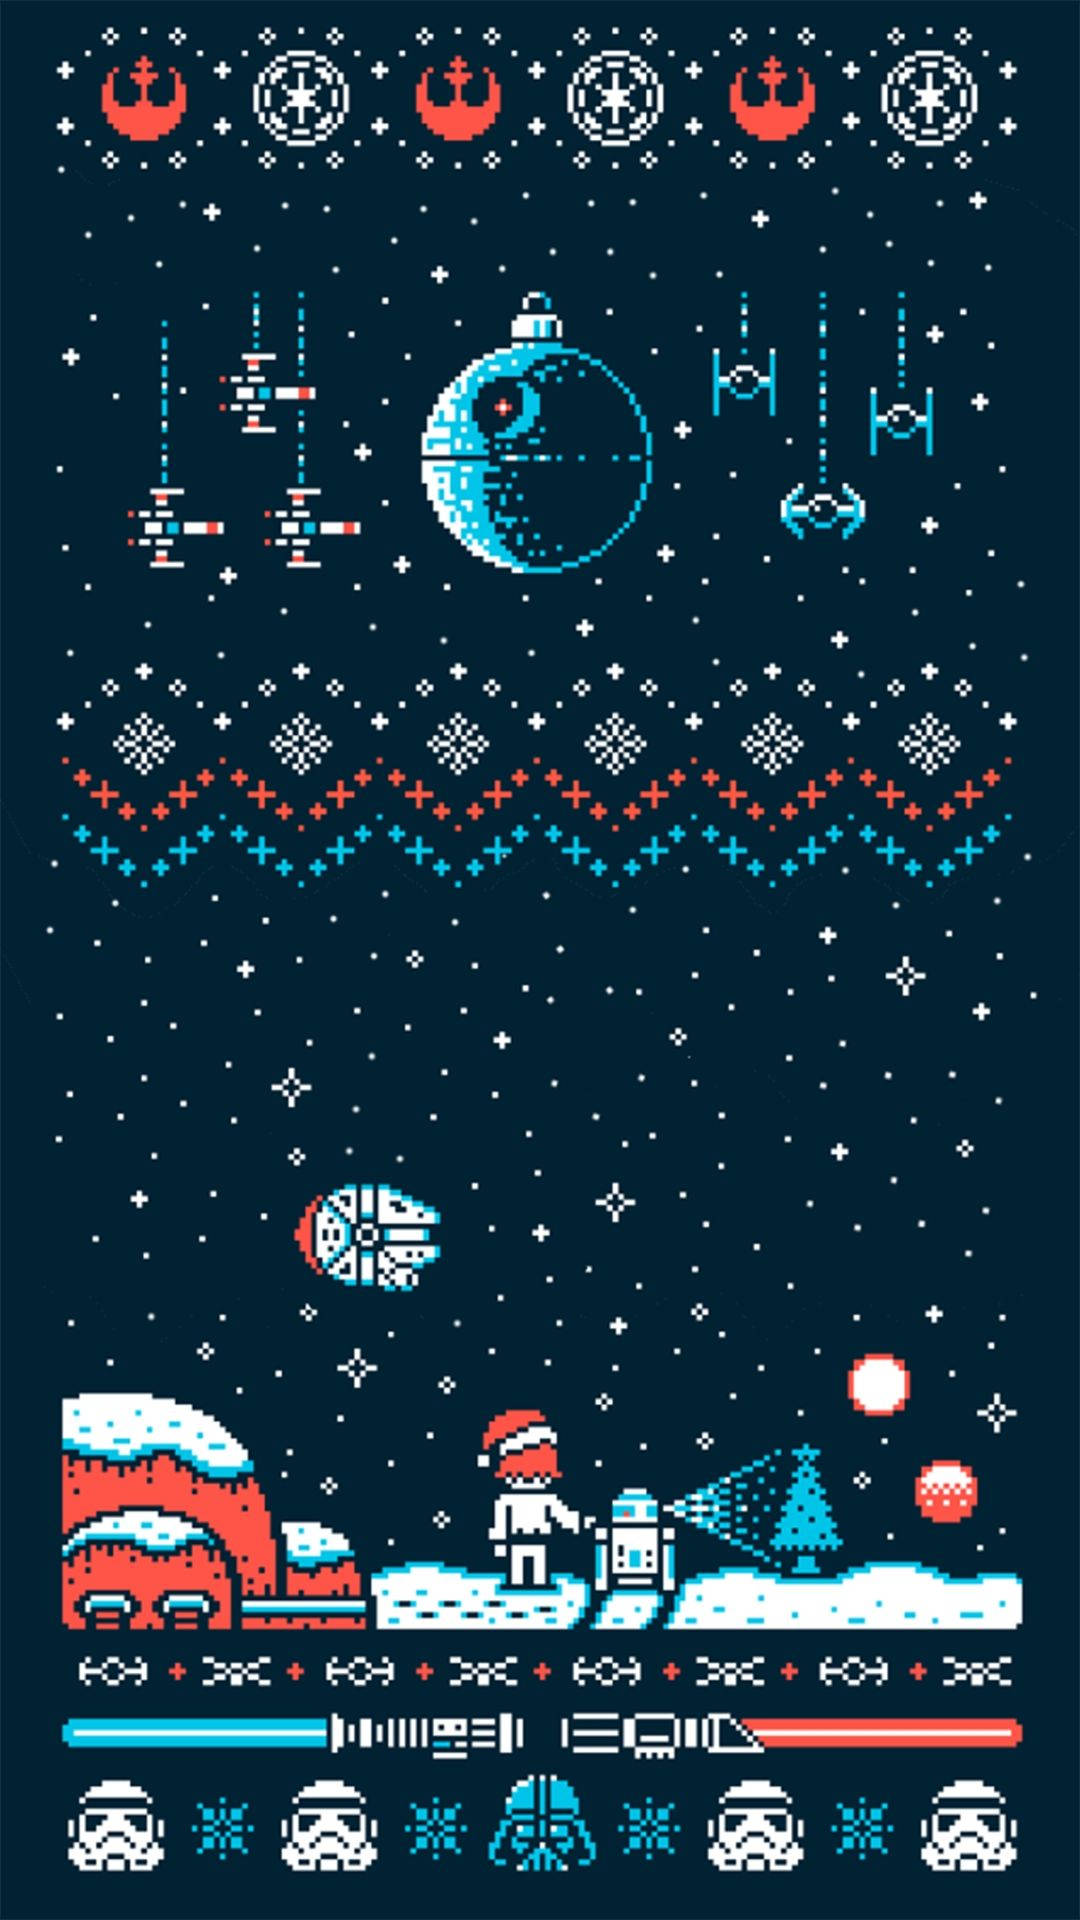 Feiernsie Ihren Intergalaktischen Feiertag In Diesem Jahr Mit Einem Star Wars Weihnachten Wallpaper